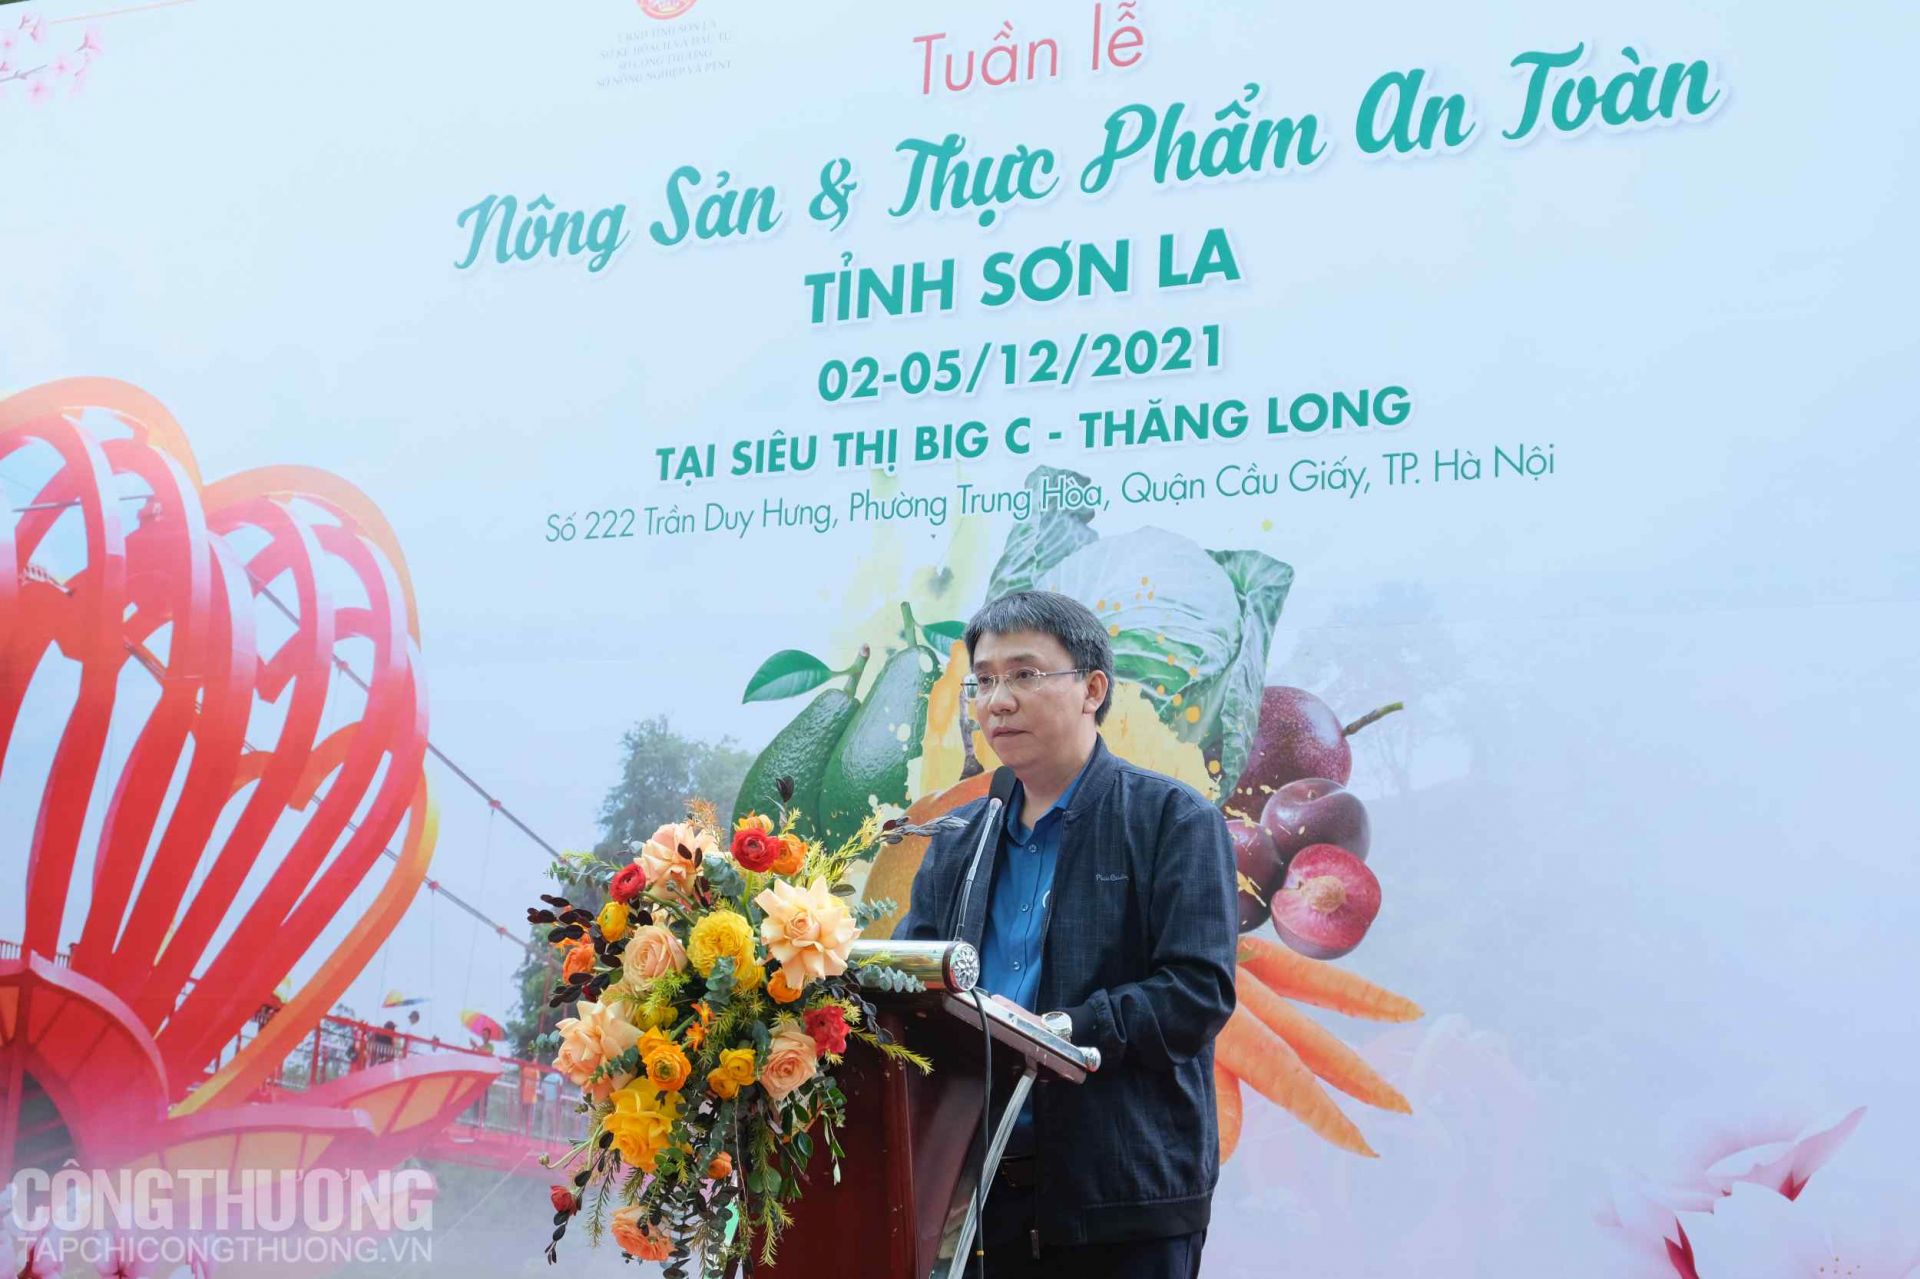 Ông Nghiêm Văn Tuấn - Giám đốc Trung tâm Xúc tiến đầu tư tỉnh Sơn La